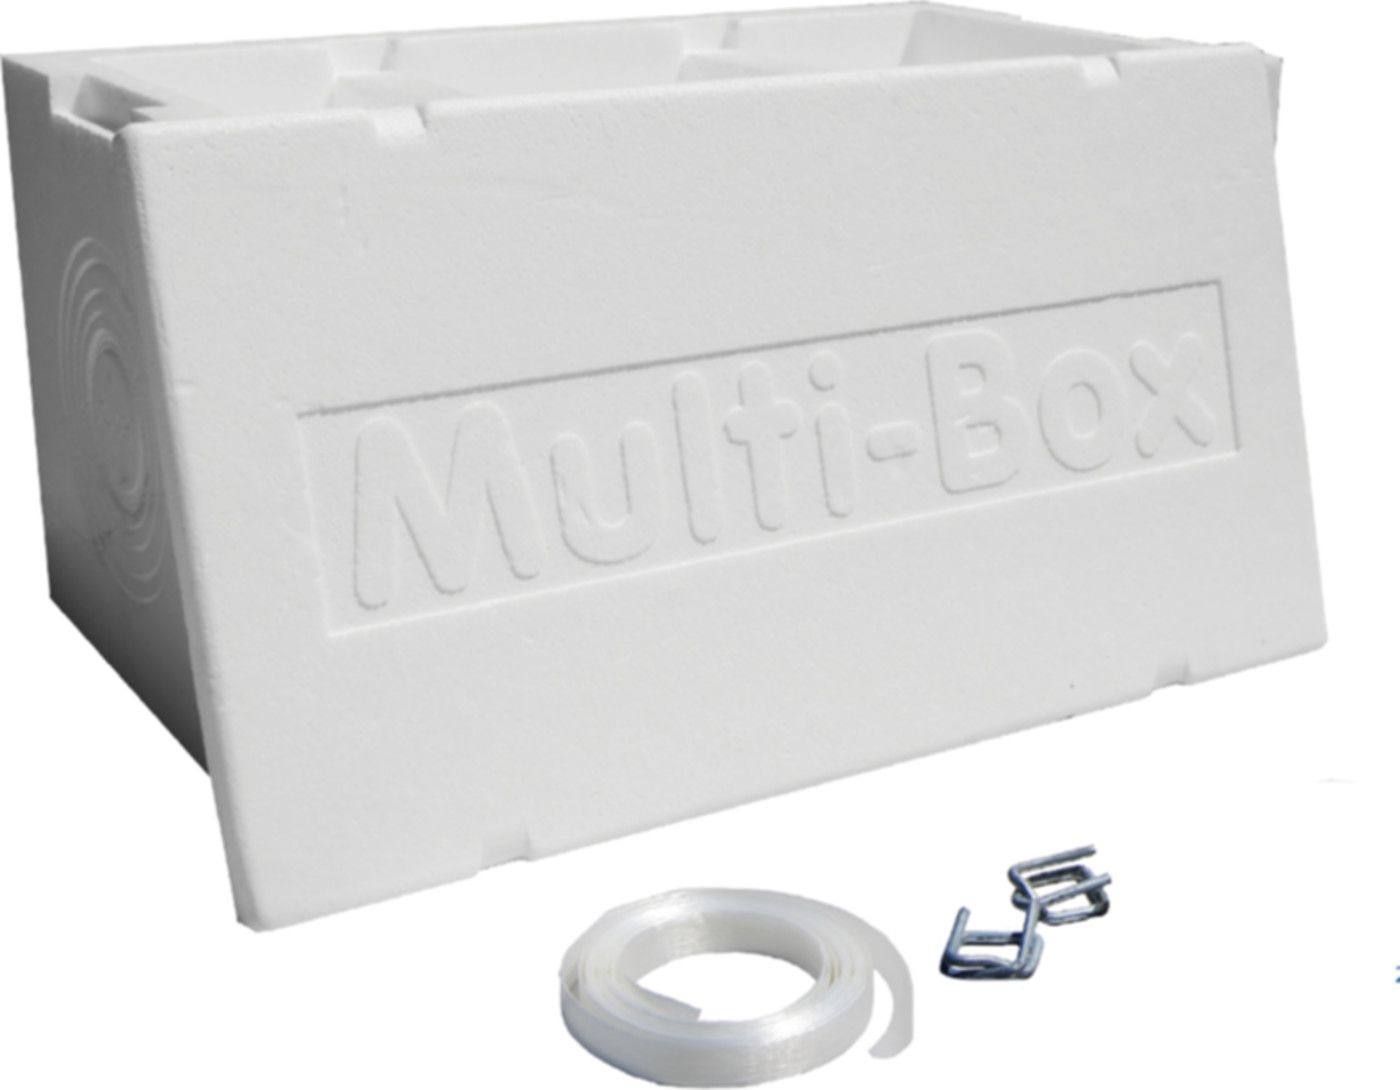 Multi-Box-Aussparungsblock 50-125mm 420 x 220 x 220mm / Dusche SM 56-63mm - Einlegehilfen